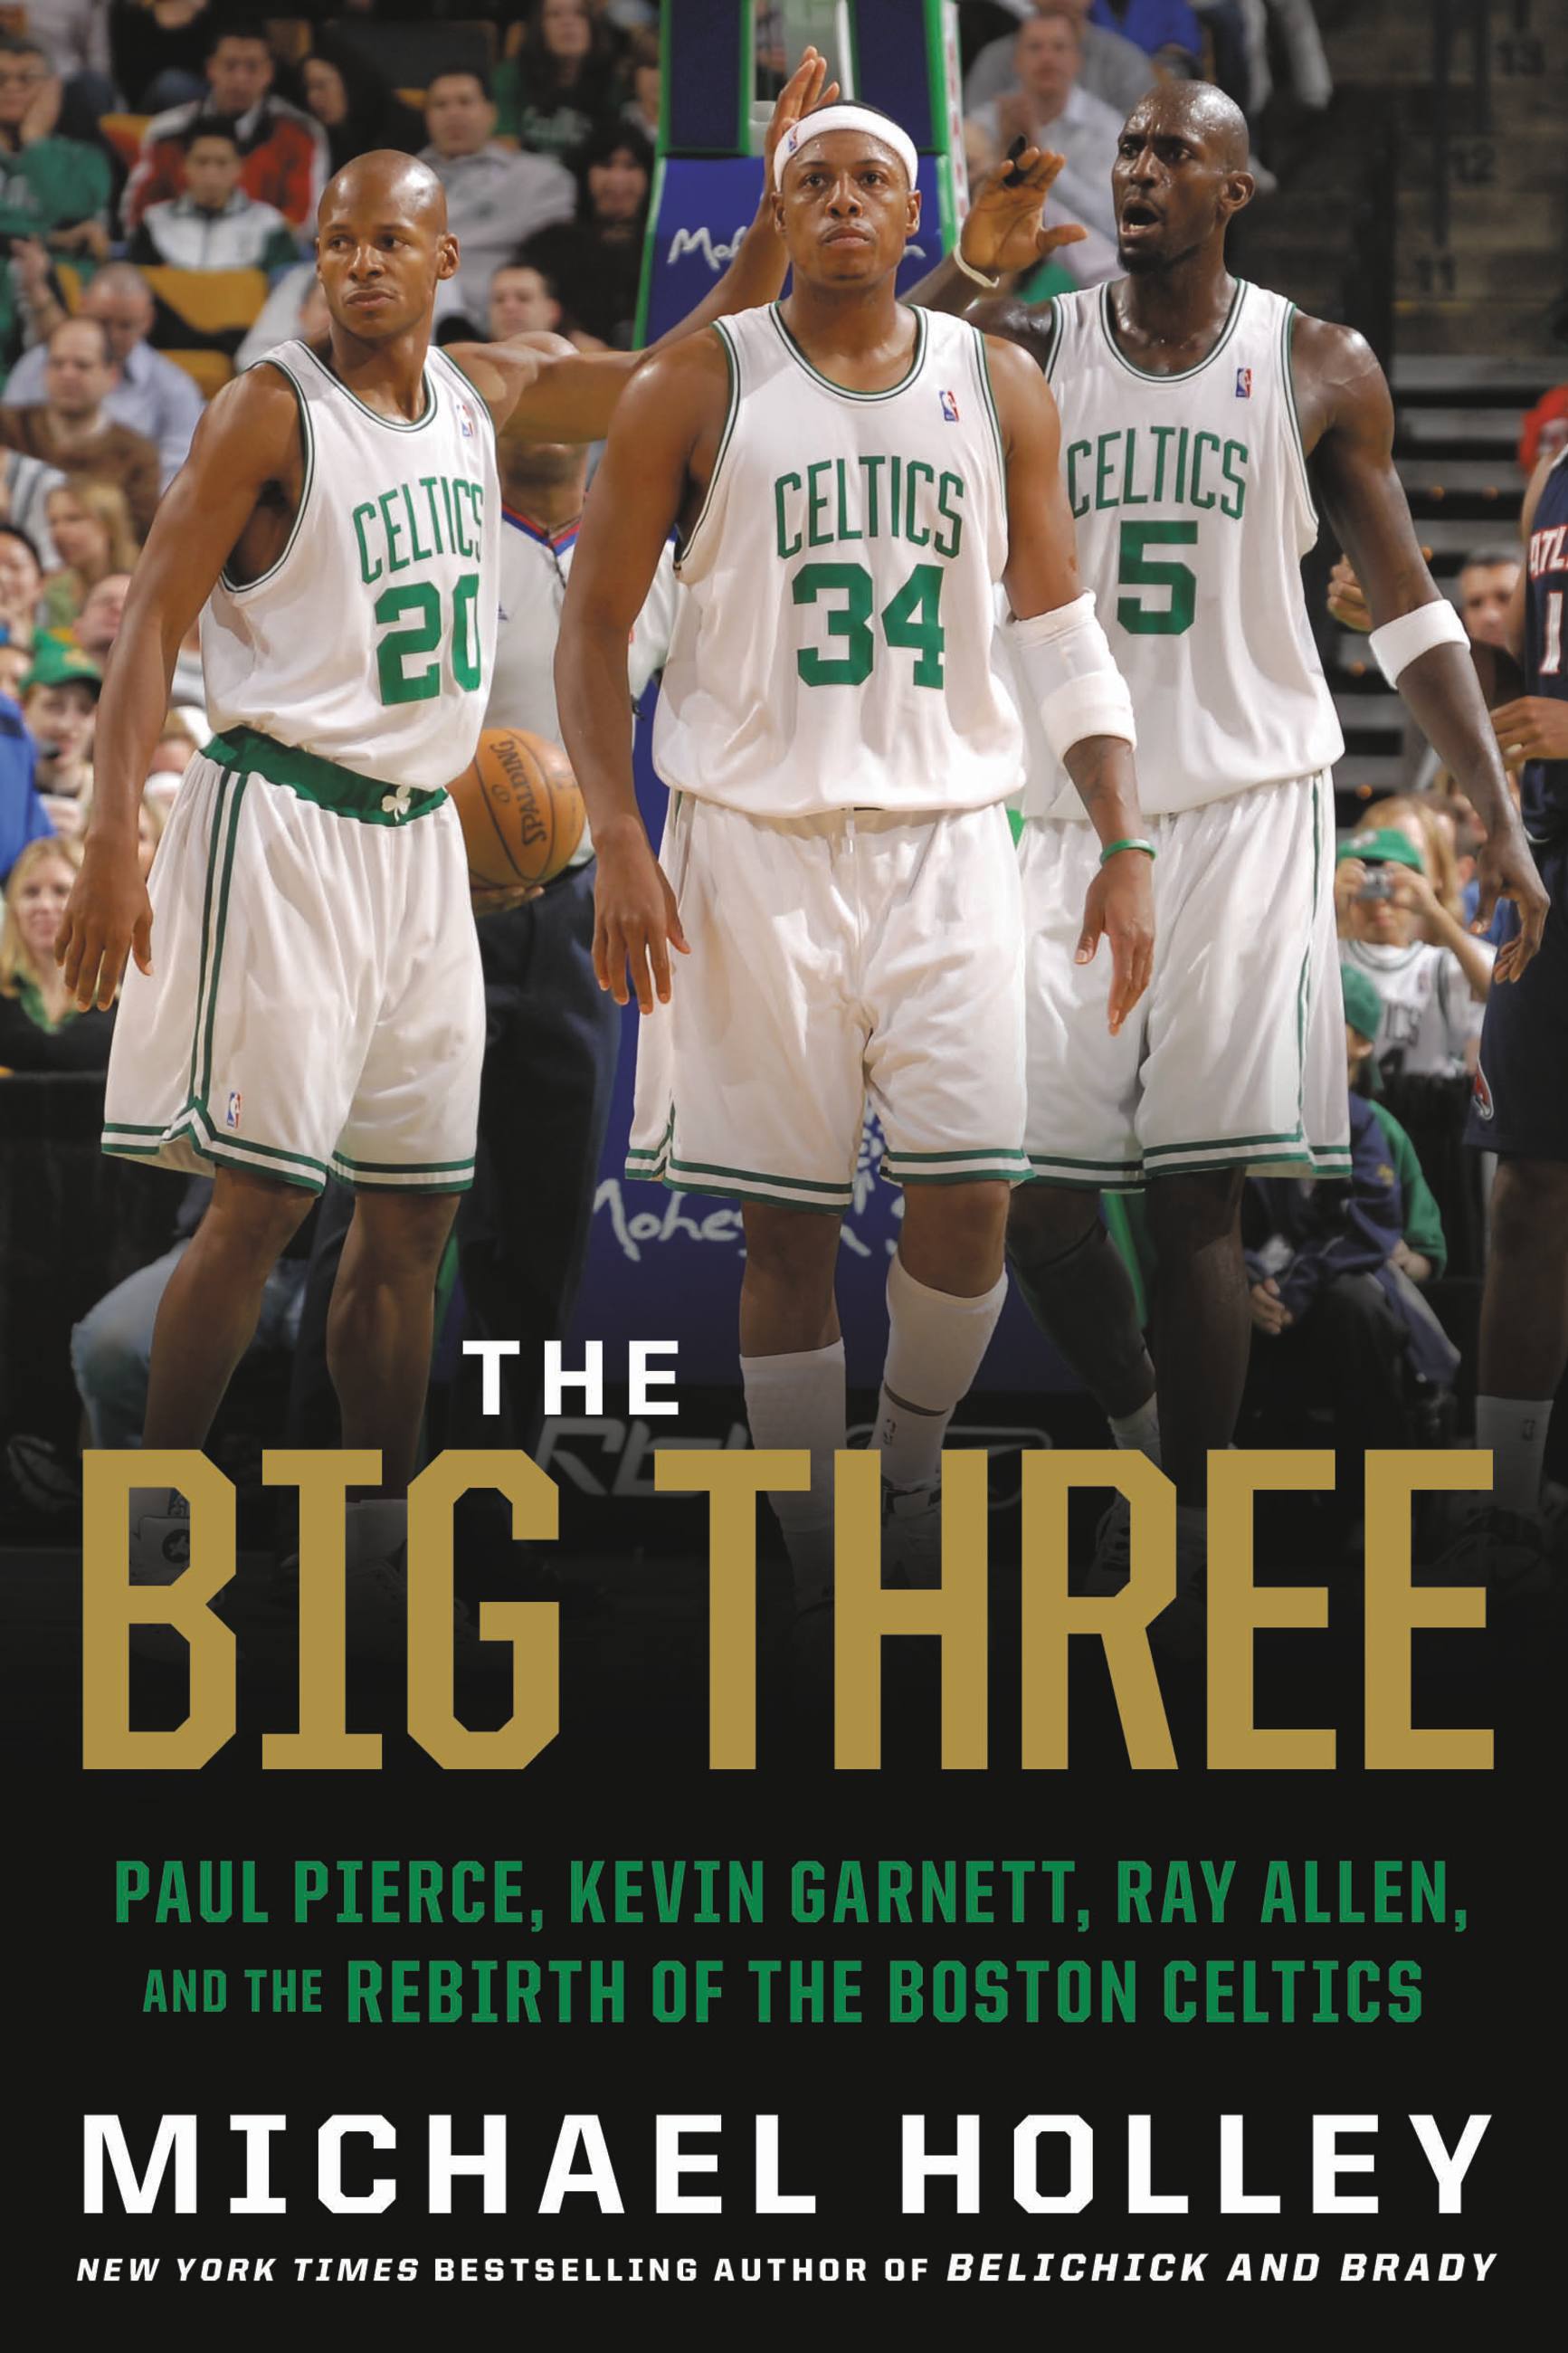 Celtics' Kevin Garnett shares his love for Boston's fans